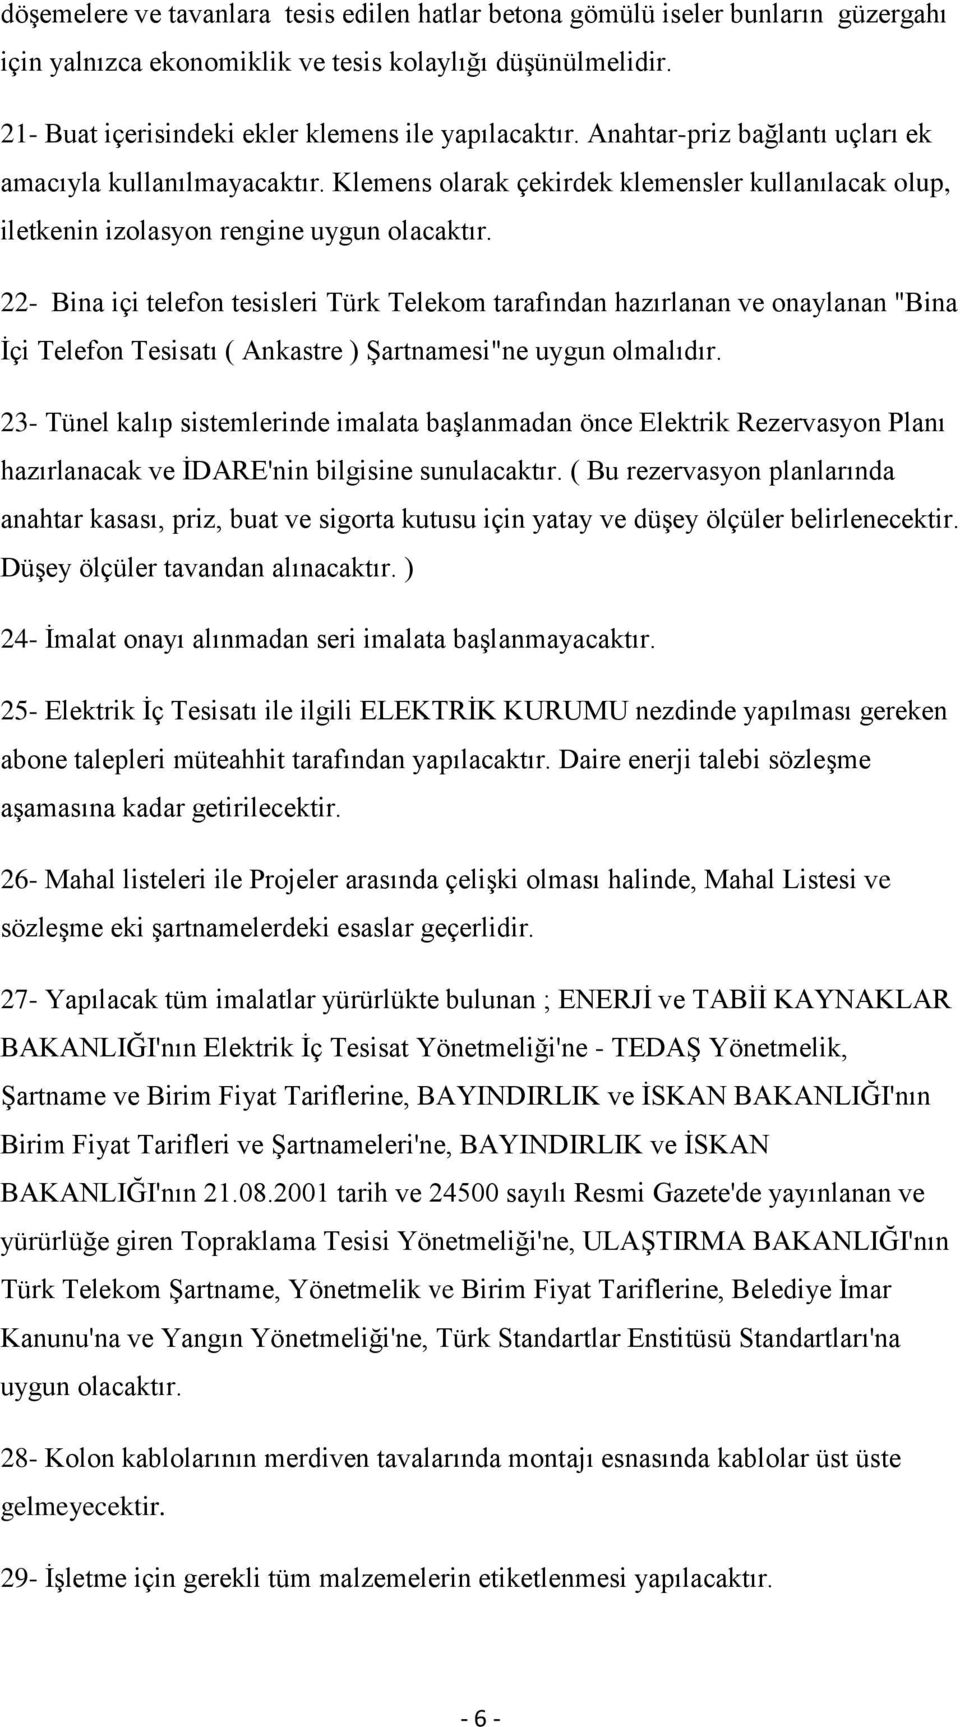 22- Bina içi telefon tesisleri Türk Telekom tarafından hazırlanan ve onaylanan "Bina İçi Telefon Tesisatı ( Ankastre ) Şartnamesi"ne uygun olmalıdır.